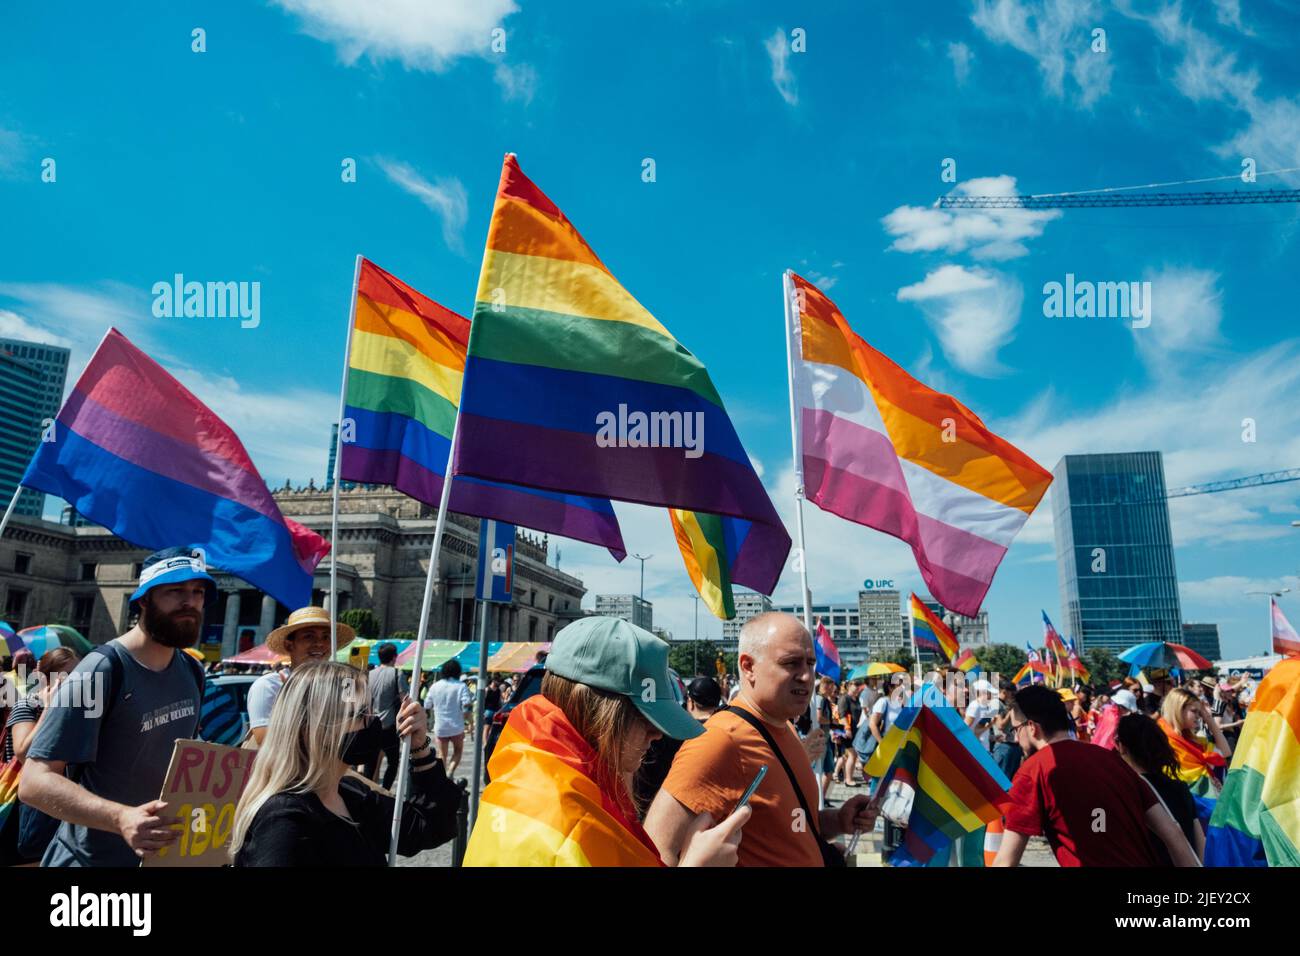 LGBT-Parade, Stolz-Monat in Warschau. Polnische und ukrainische Aktivisten marschieren für LGBTQ-Rechte, Gleichstellungsparade. Warschau, Polen, 25. Juni 2022 Stockfoto